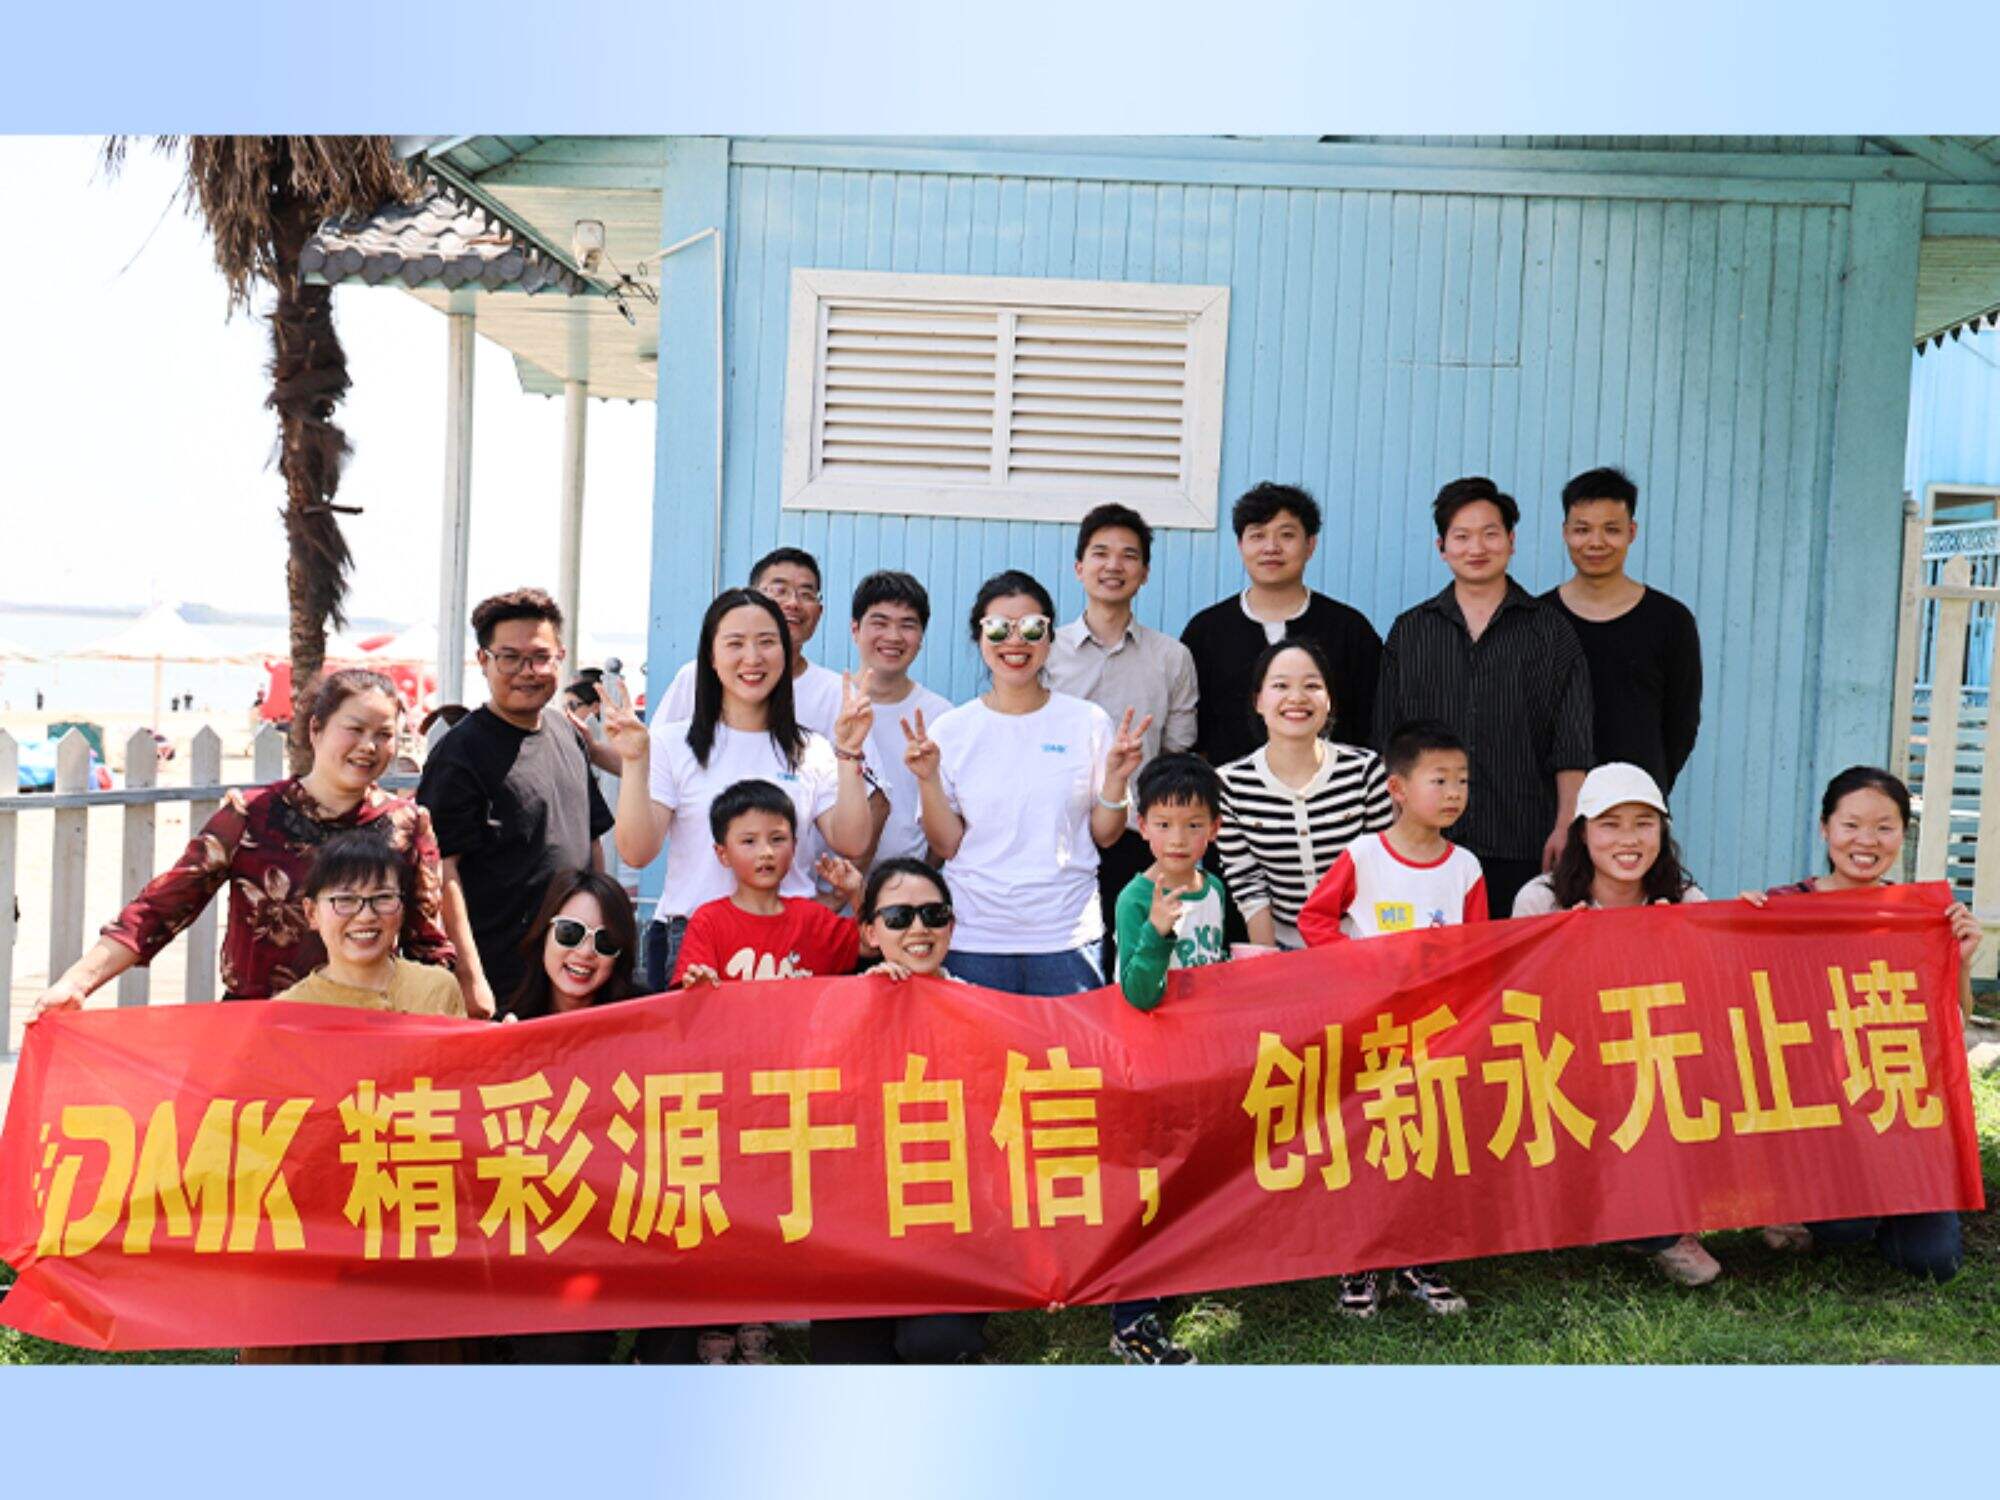 Das dänische Unternehmen veranstaltet ein großes Teambuilding-Event im Liangzihu Longwan Resort in Wuhan